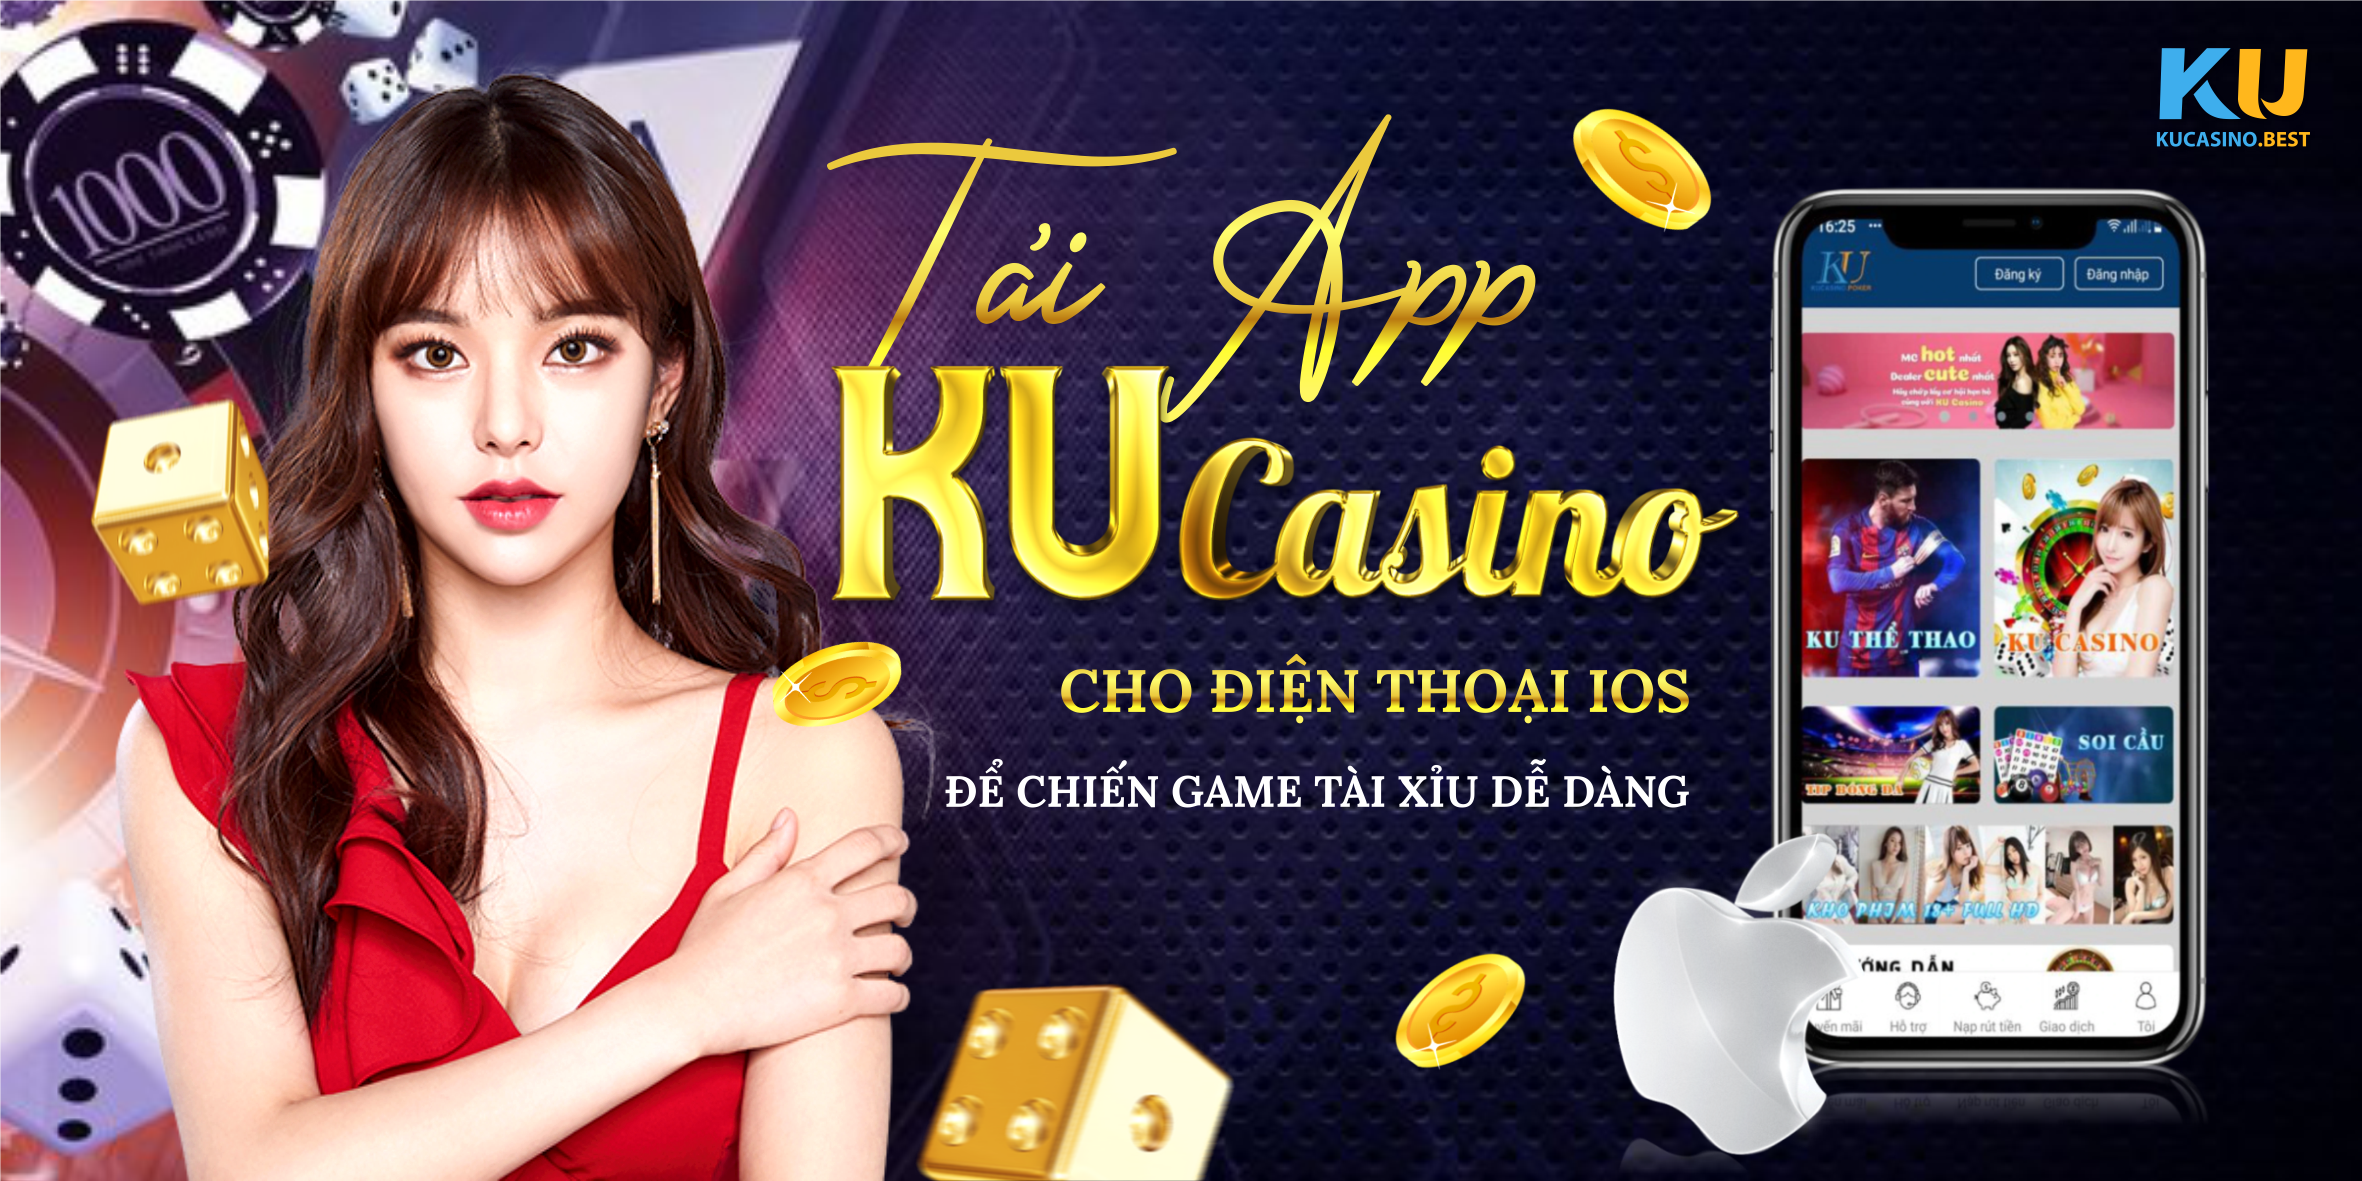 Tải App Ku Casino cho IOS để chiến game tài xỉu online dễ dàng